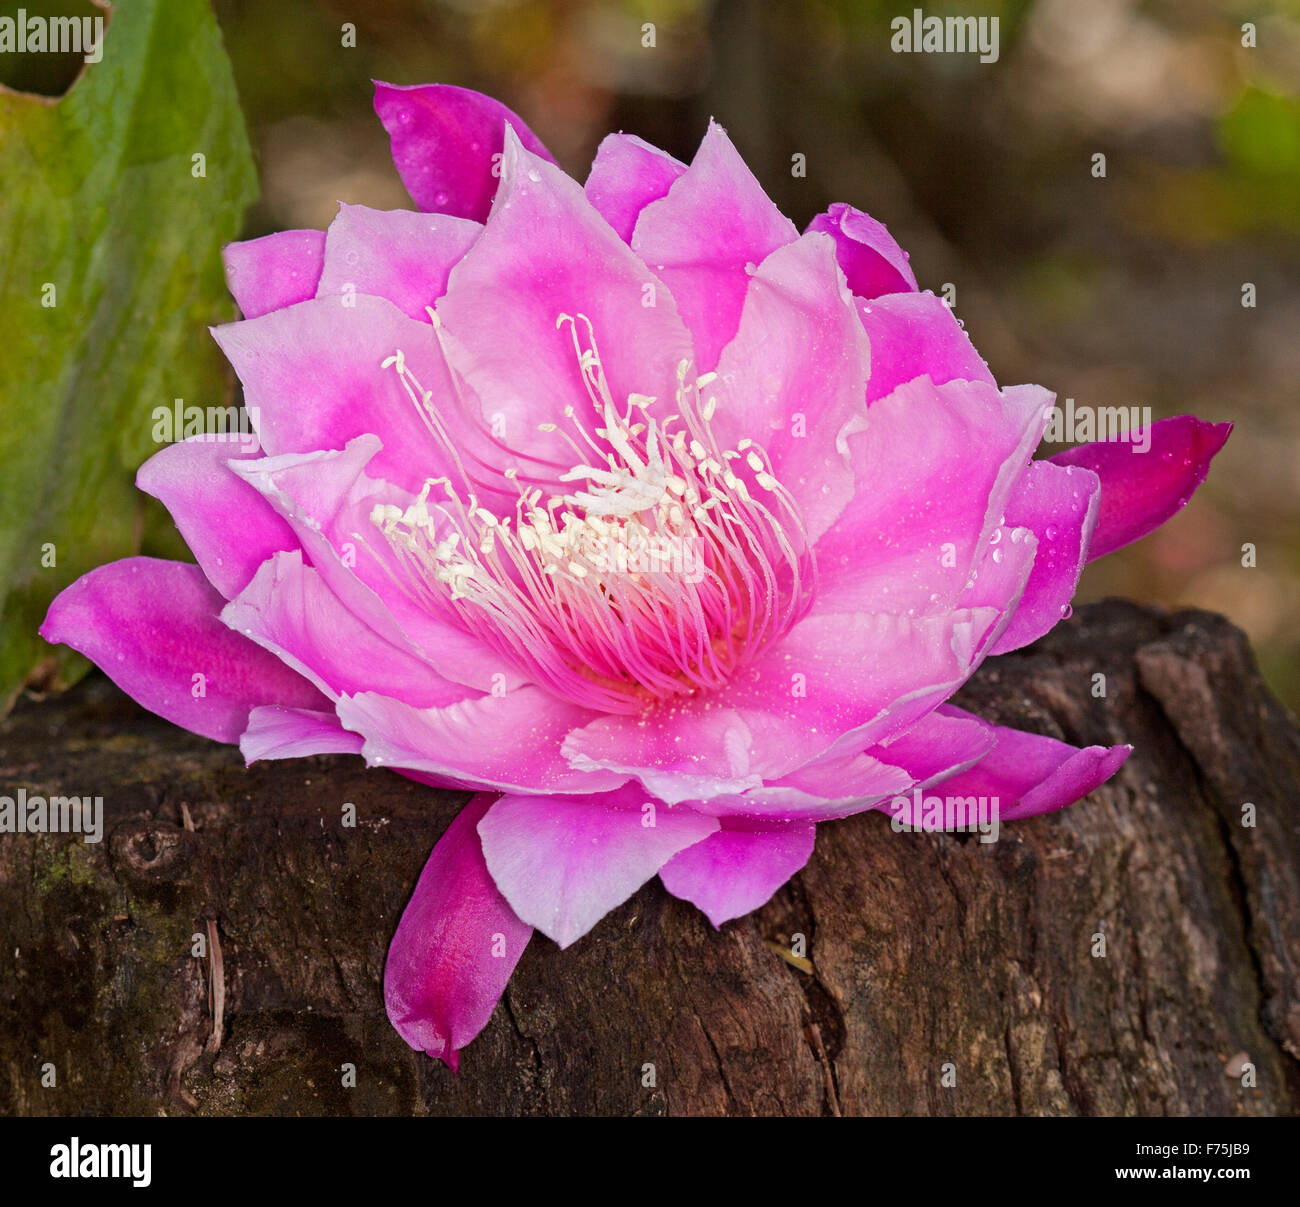 Grandes fleurs rose vif spectaculaire de cactus Epiphyllum, épris de l'ombre des plantes épiphytes Banque D'Images